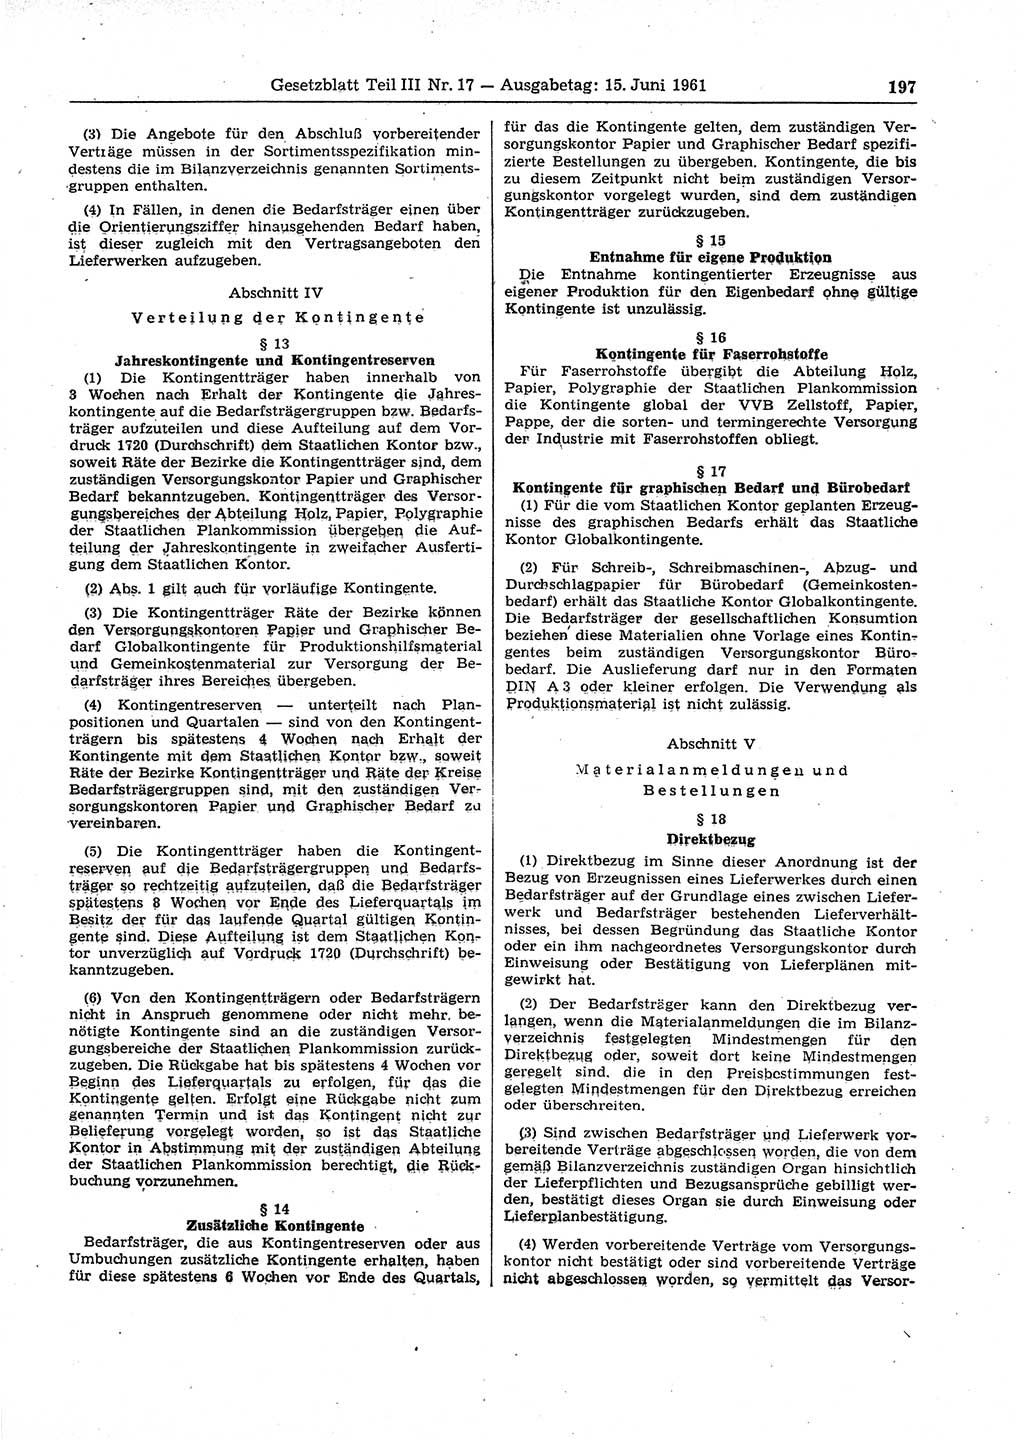 Gesetzblatt (GBl.) der Deutschen Demokratischen Republik (DDR) Teil ⅠⅠⅠ 1961, Seite 197 (GBl. DDR ⅠⅠⅠ 1961, S. 197)